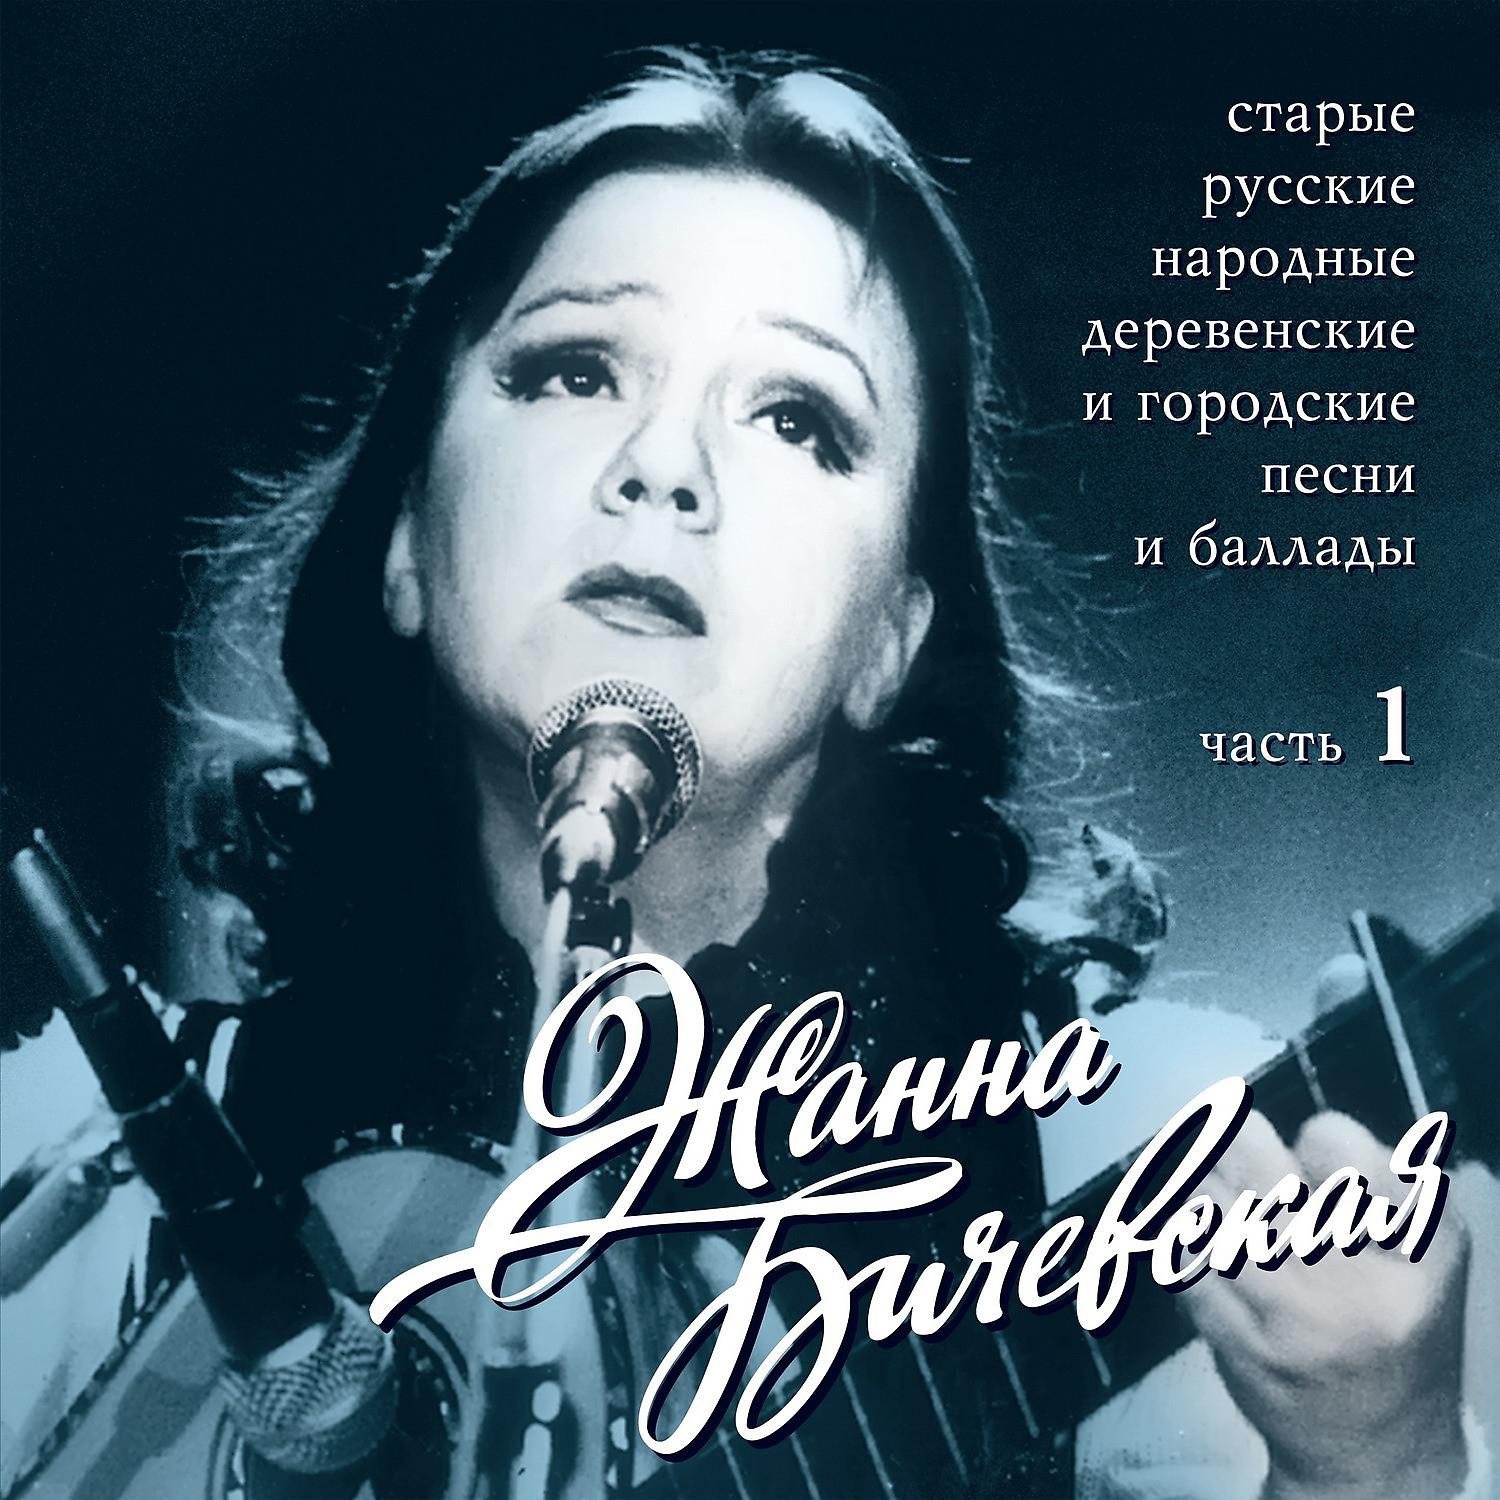 Найти народные песни слушать. Старые русские песни. Старинные песни русские.